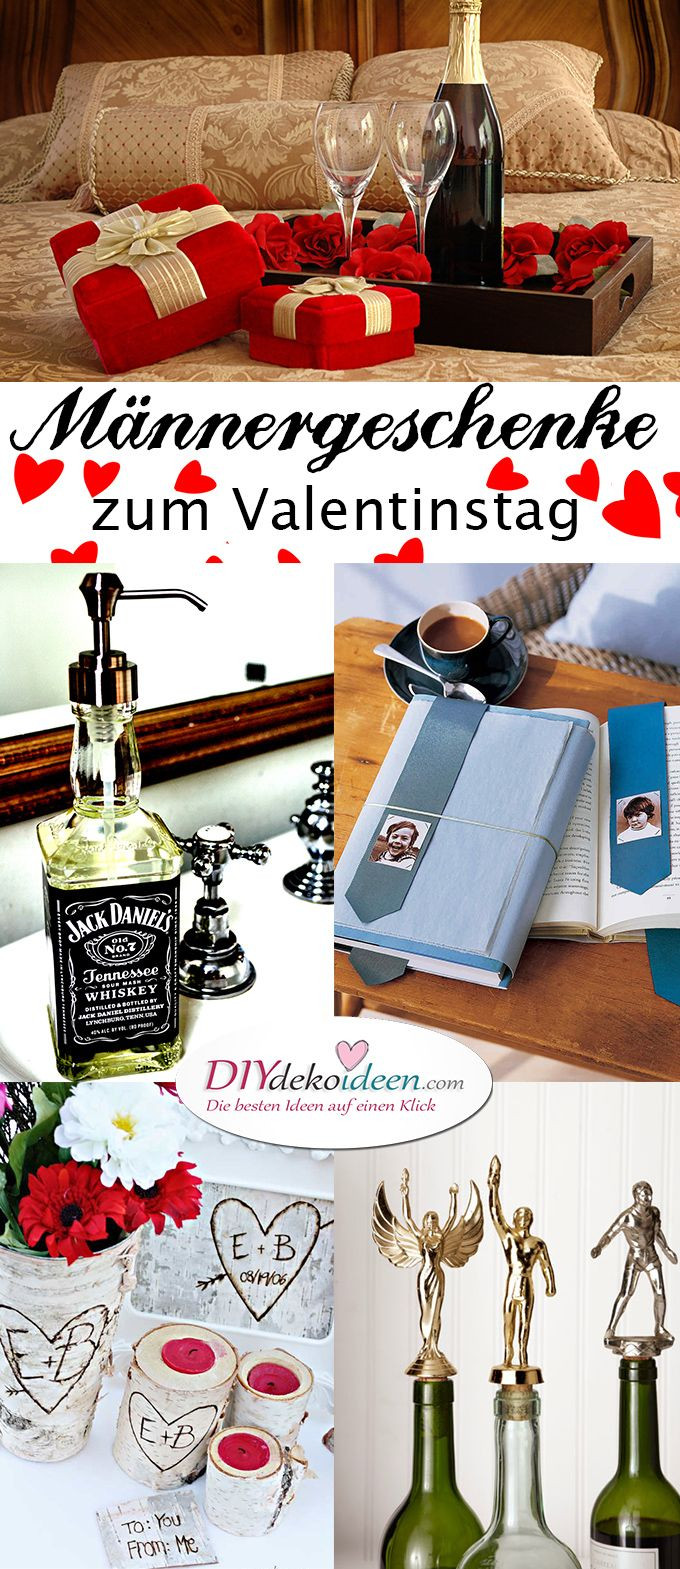 Diy Valentinstag Geschenk Für Ihn
 Männergeschenke zum Valentinstag DIY Bastelideen